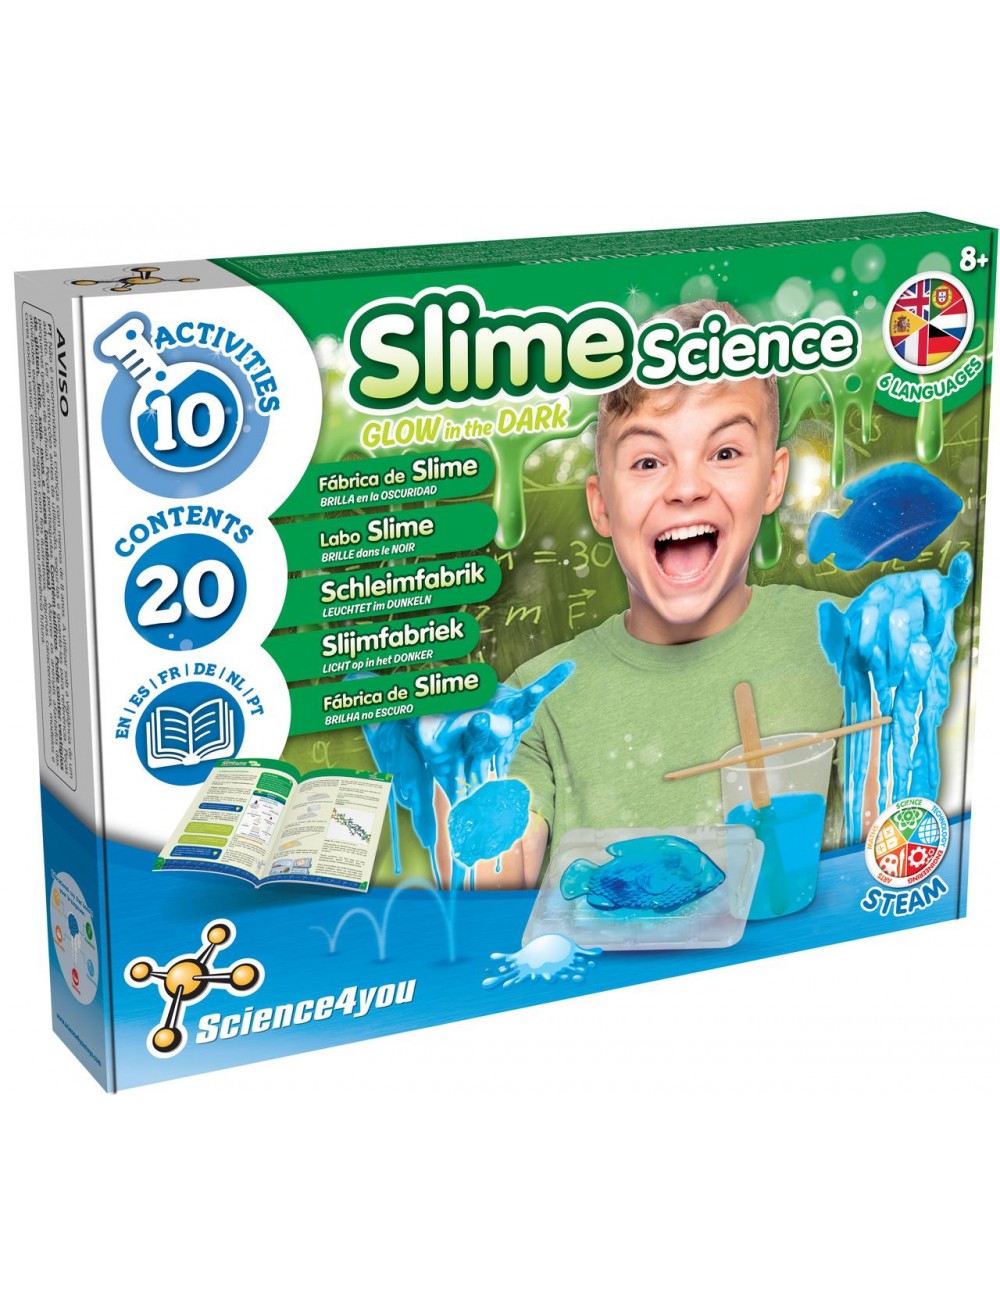 Slime science